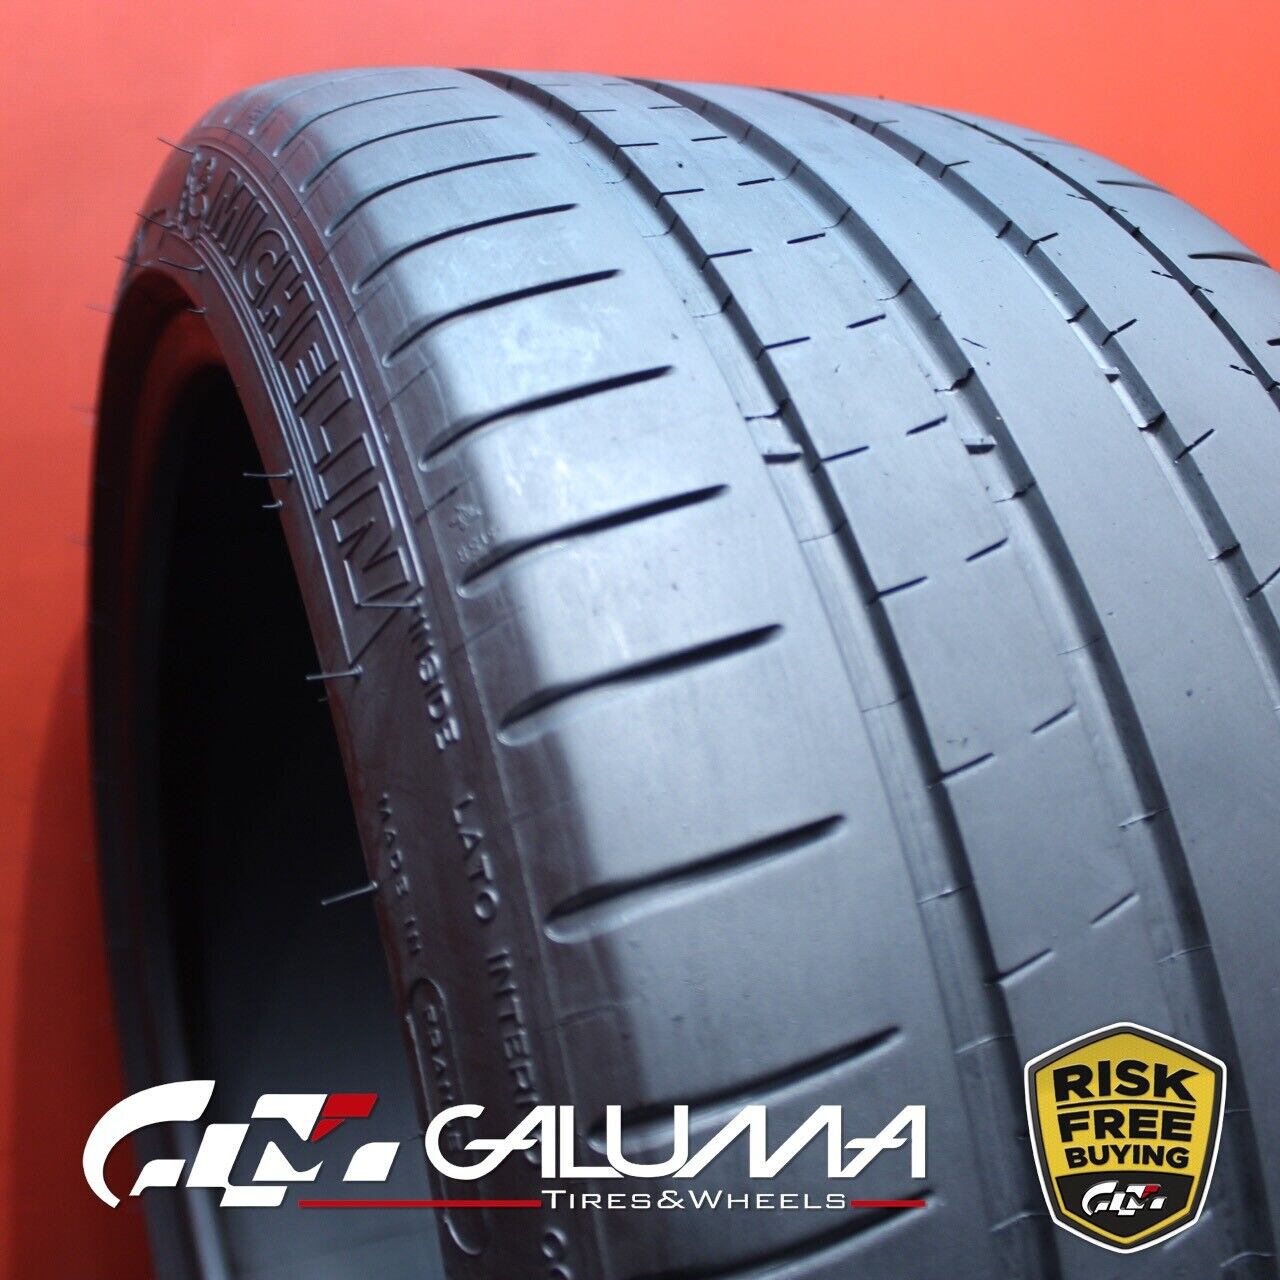 1 (One) Tire Michelin Pilot Super Sport 265/35ZR19 265/35/19 2653519 98Y #78752